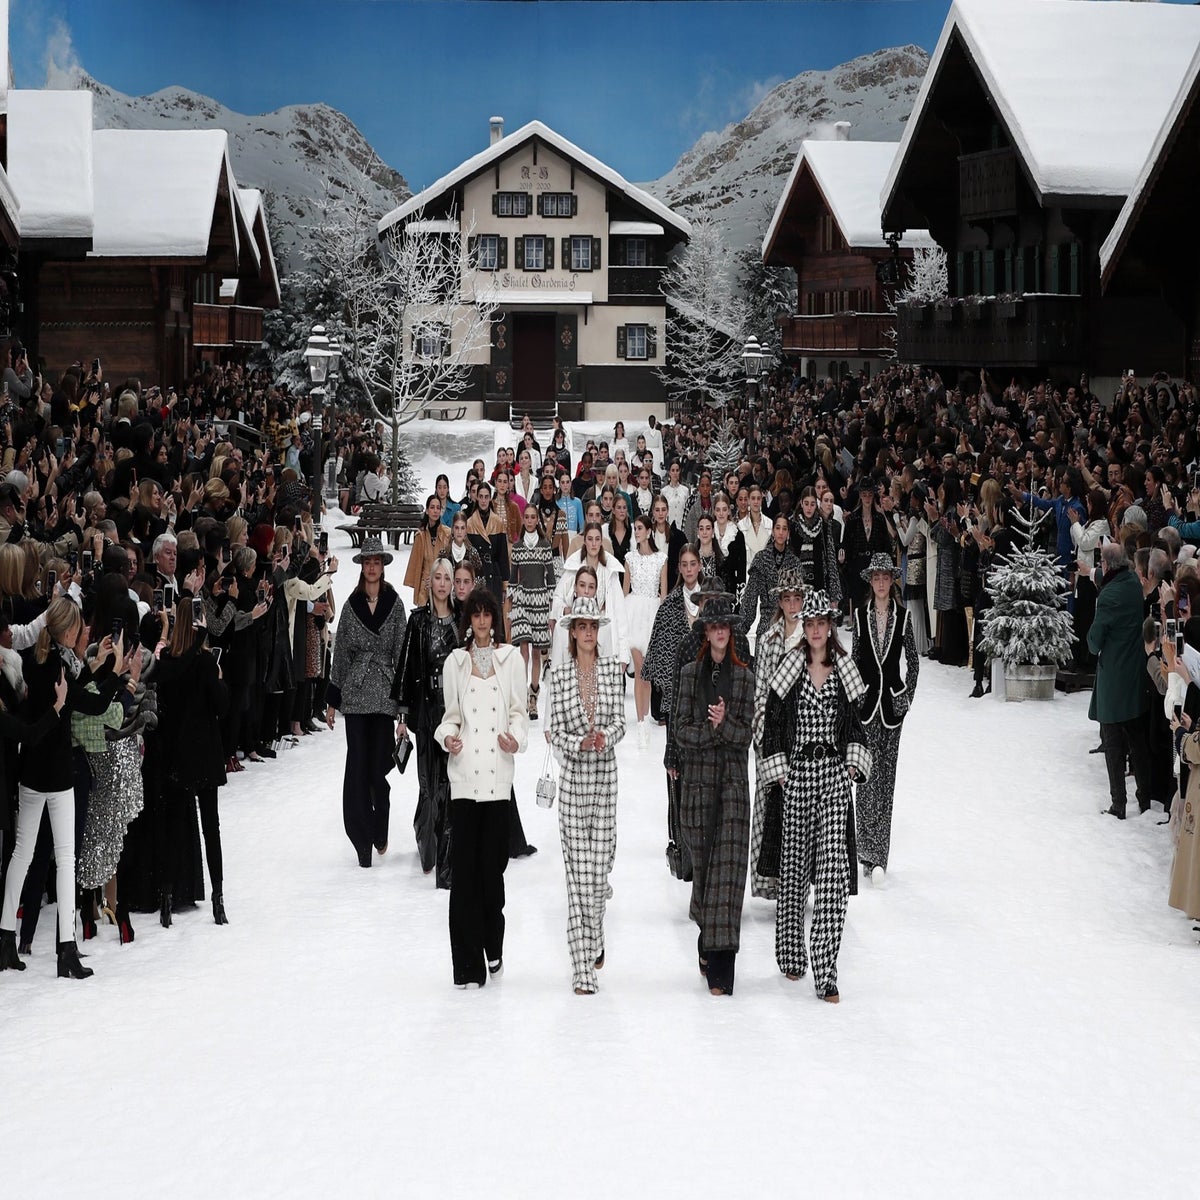 Karl Lagerfeld's Last Paris Fashion Show - Fall 2019